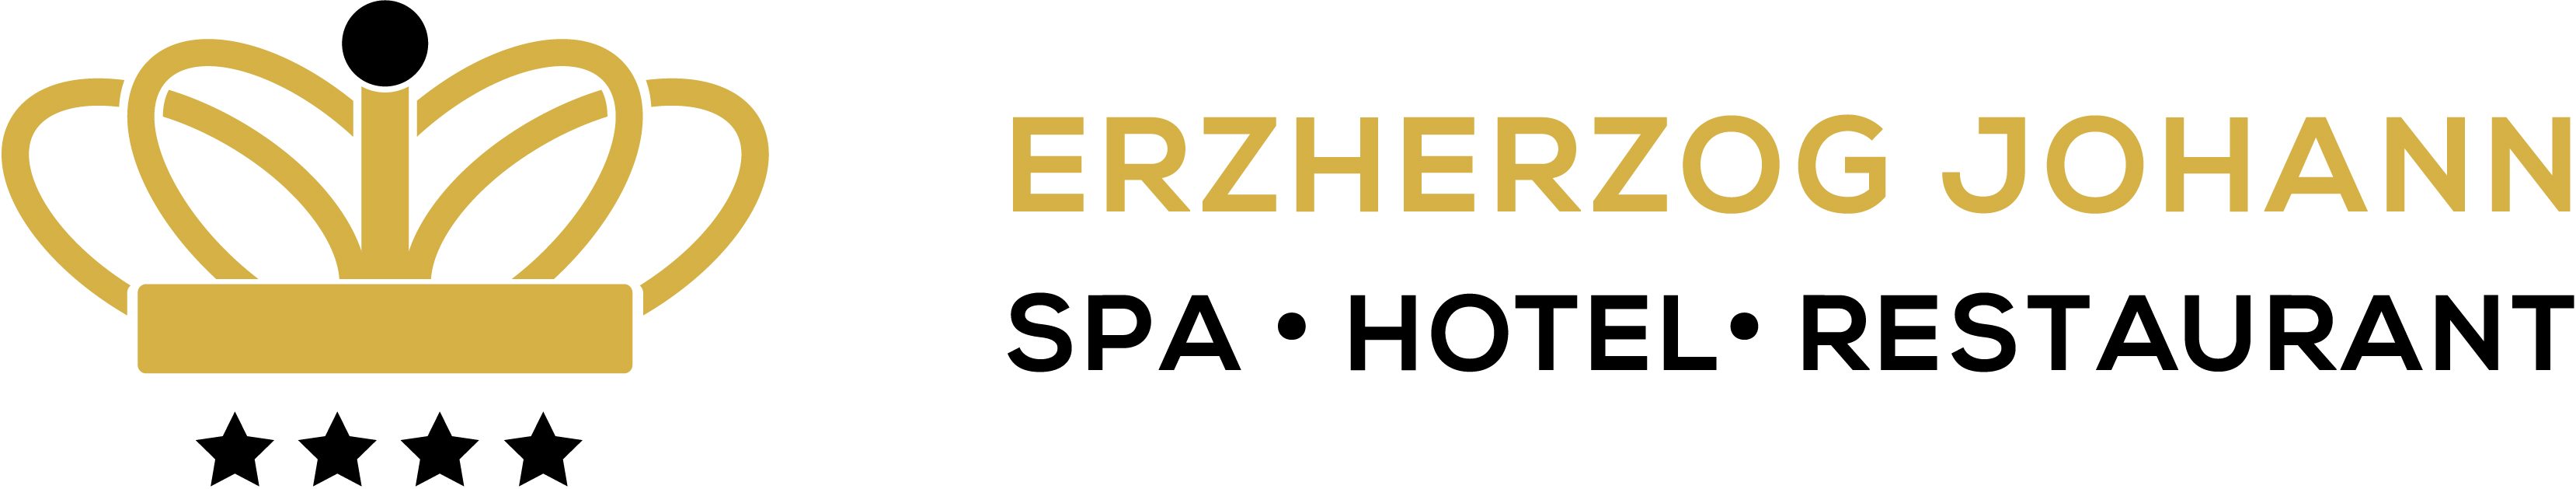 Hotel Erzherzog Johann logo